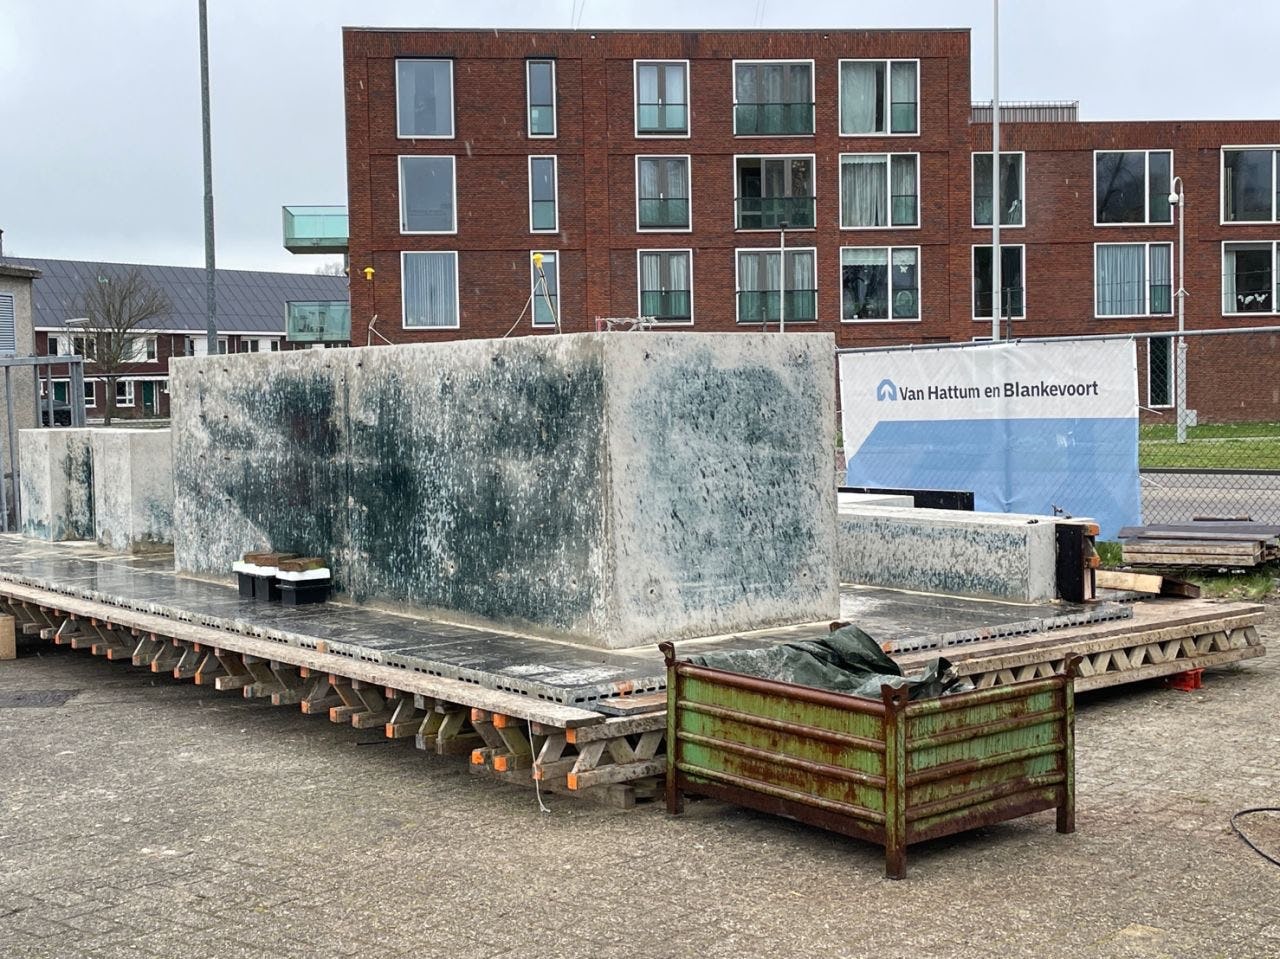 Proefstuk voor een kademuur met geopolymeerbeton dat eerder dit jaar werd gestort in de Rotterdamse haven. Foto: Van Hattum & Blankevoort